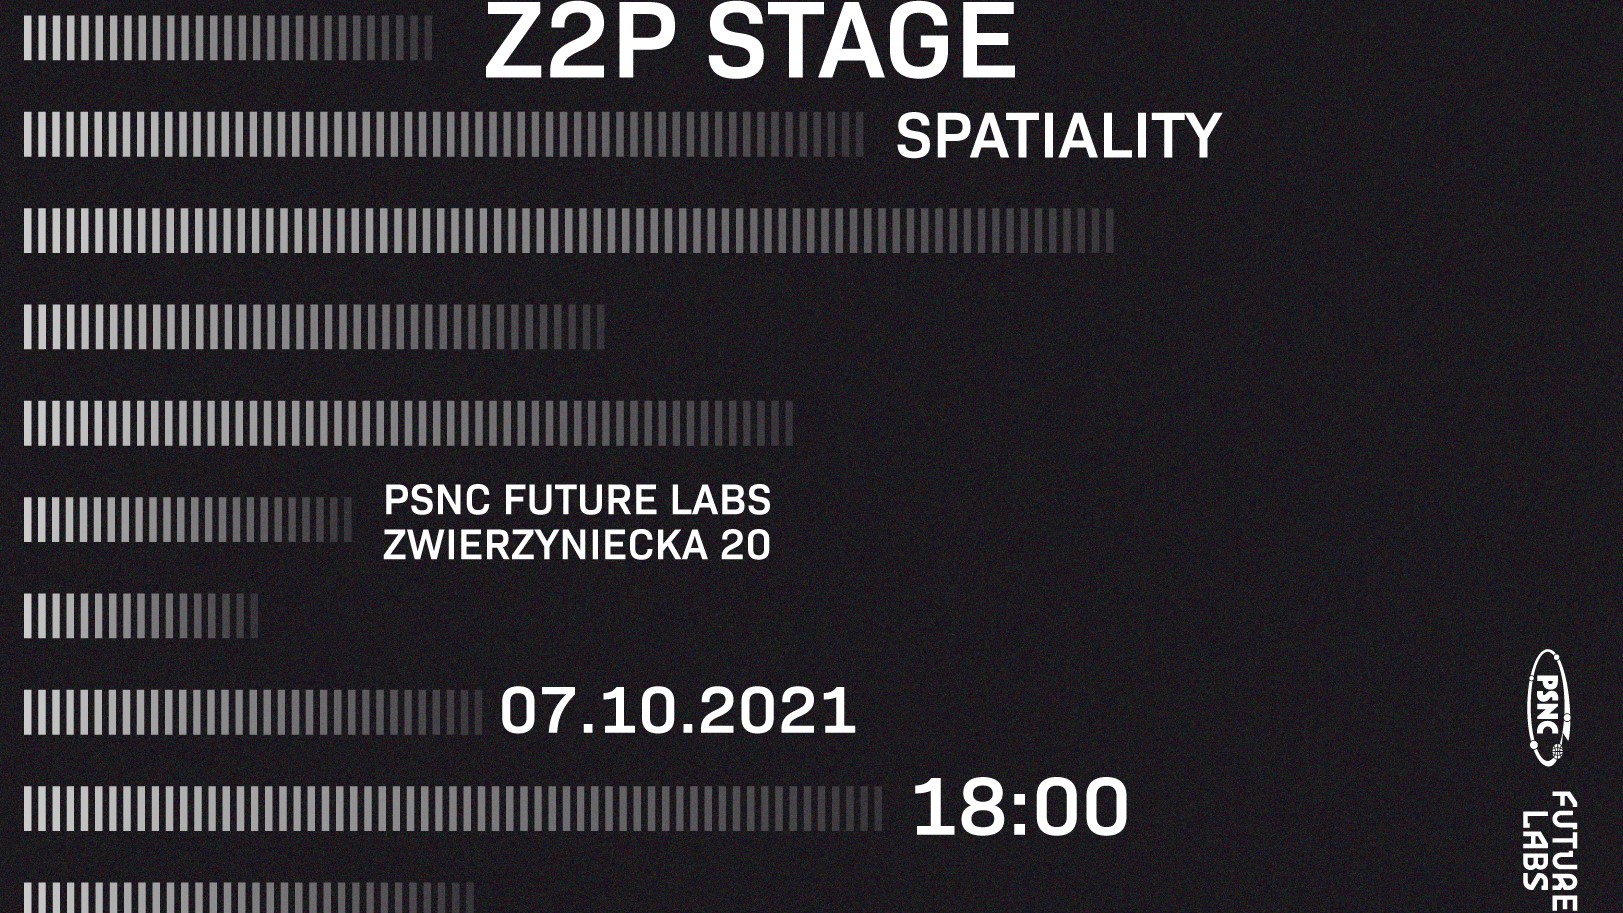 Trzecia edycja Z2P Stage w przestrzeniach PSNC Future Labs